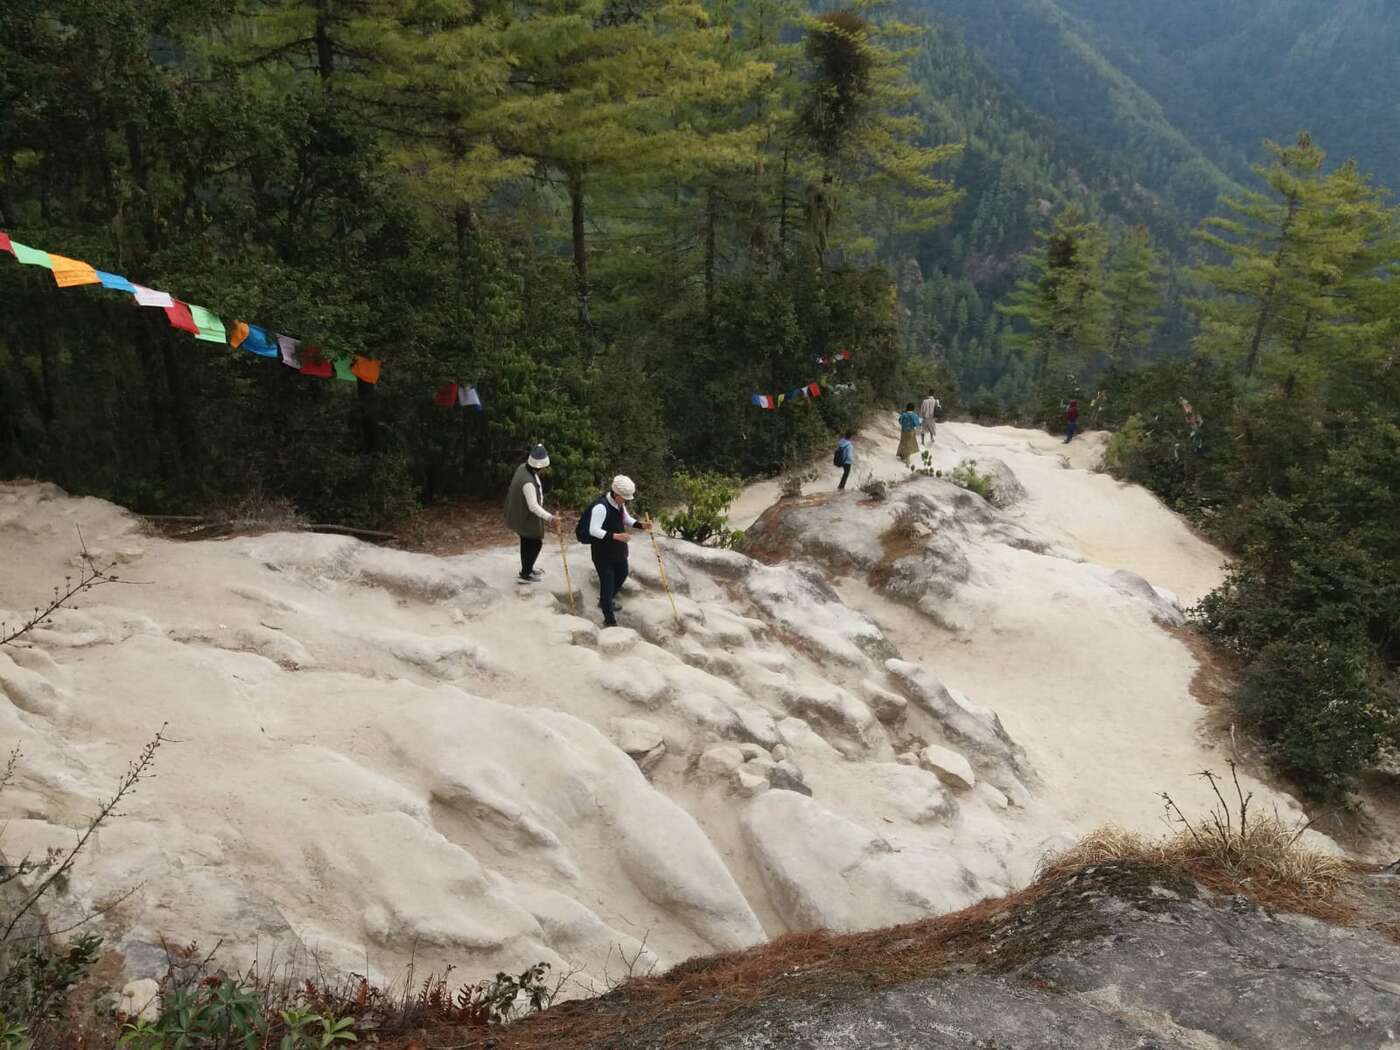 Taktshang (Tigernest) in Bhutan, April 2019